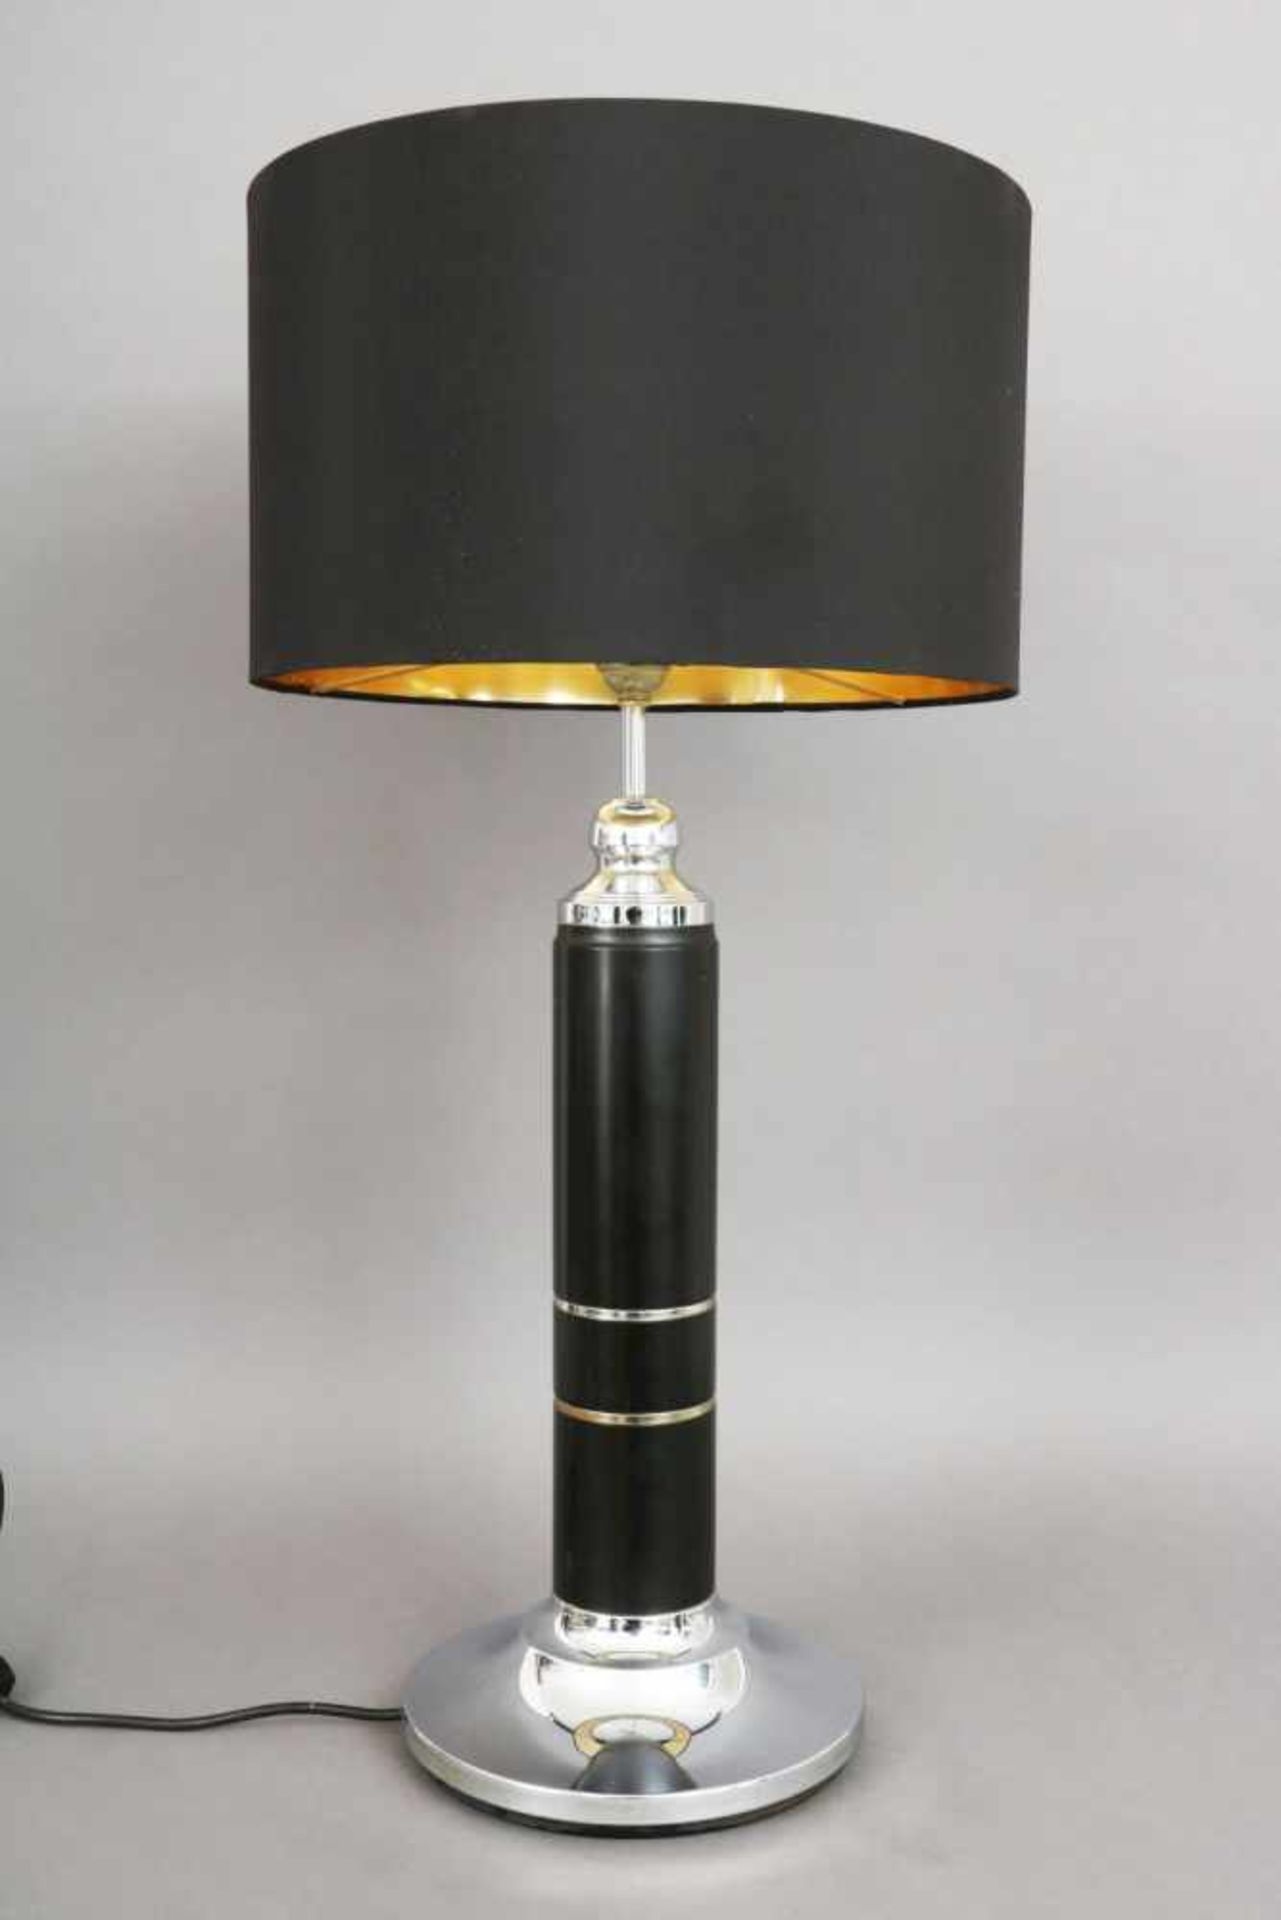 Tischlampe der 1980er Jahreverchromtes Metall und schwarzer Lederbeschlag, Säulenform, schwarzer - Bild 2 aus 3